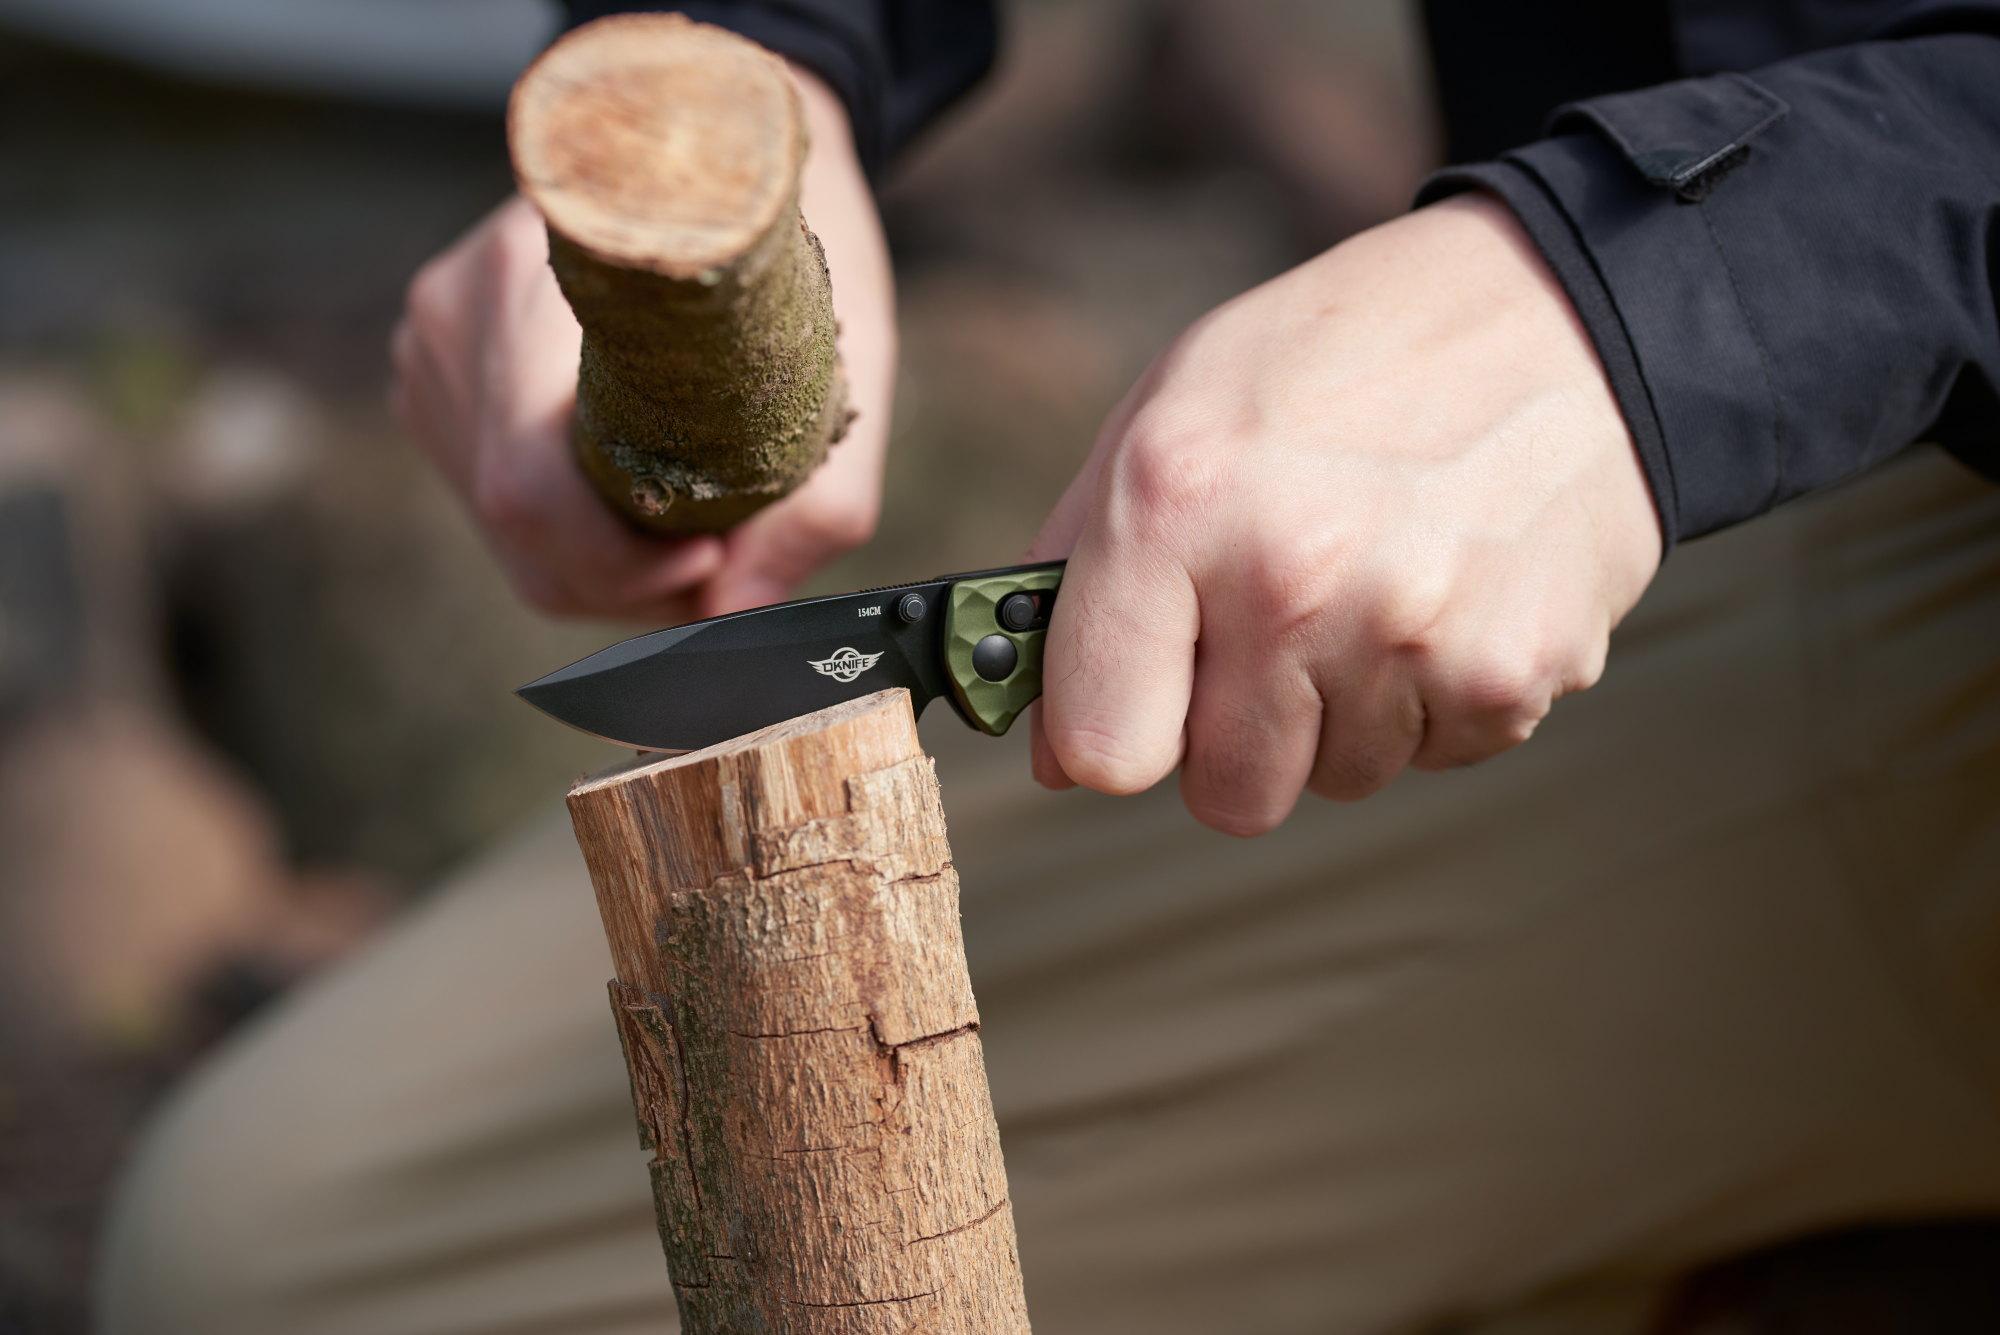 Сгъваем нож Oknife Rubato 3 - Зелен 154CM неръждаема стомана с черно титаниево PVD покритие